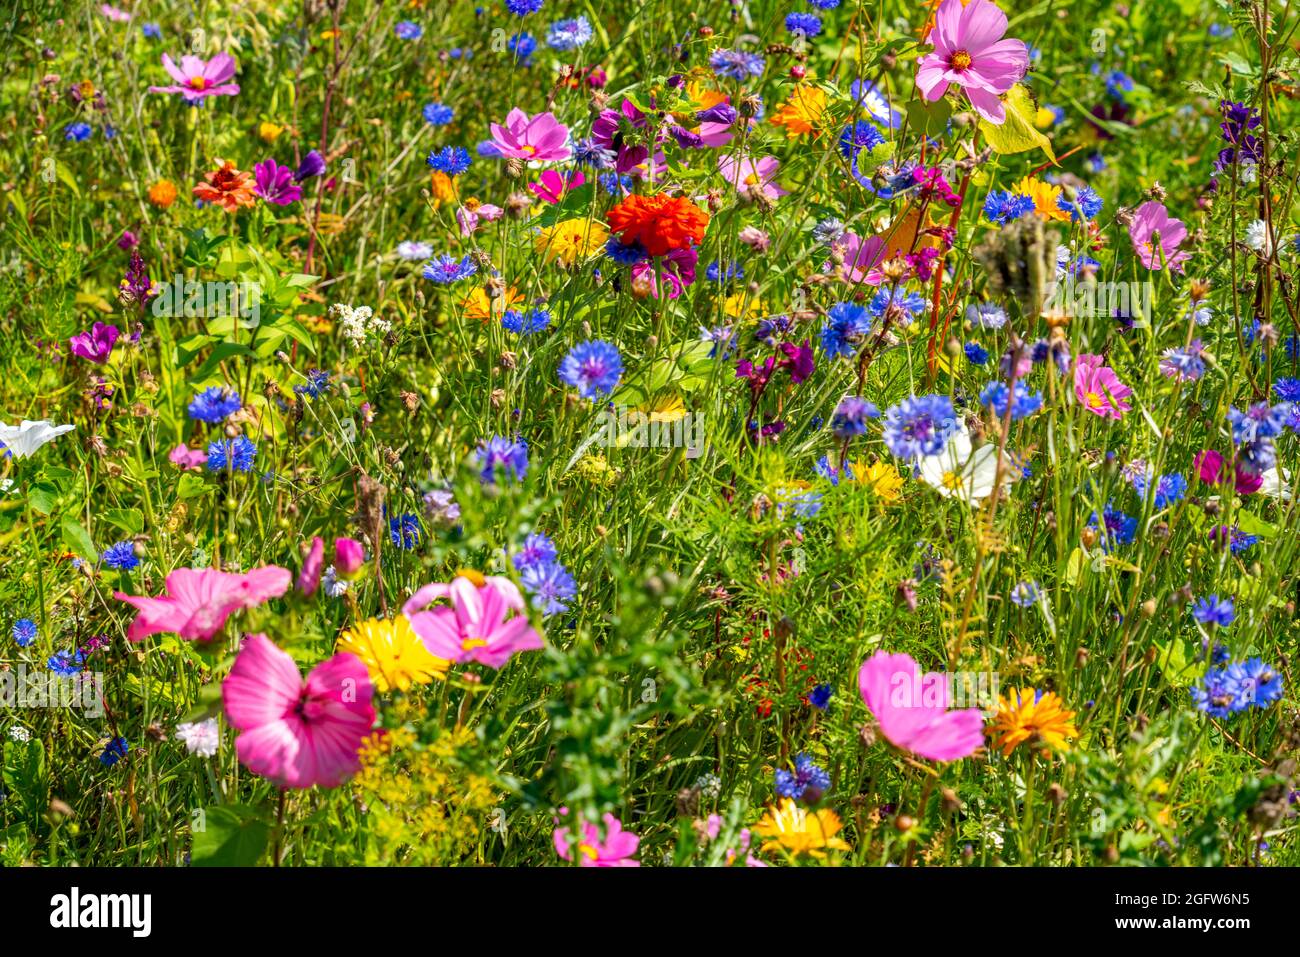 Wildblumenwiese, viele verschiedene Blumen und Pflanzen, wichtiges Biotop für Insekten, Foto Stock